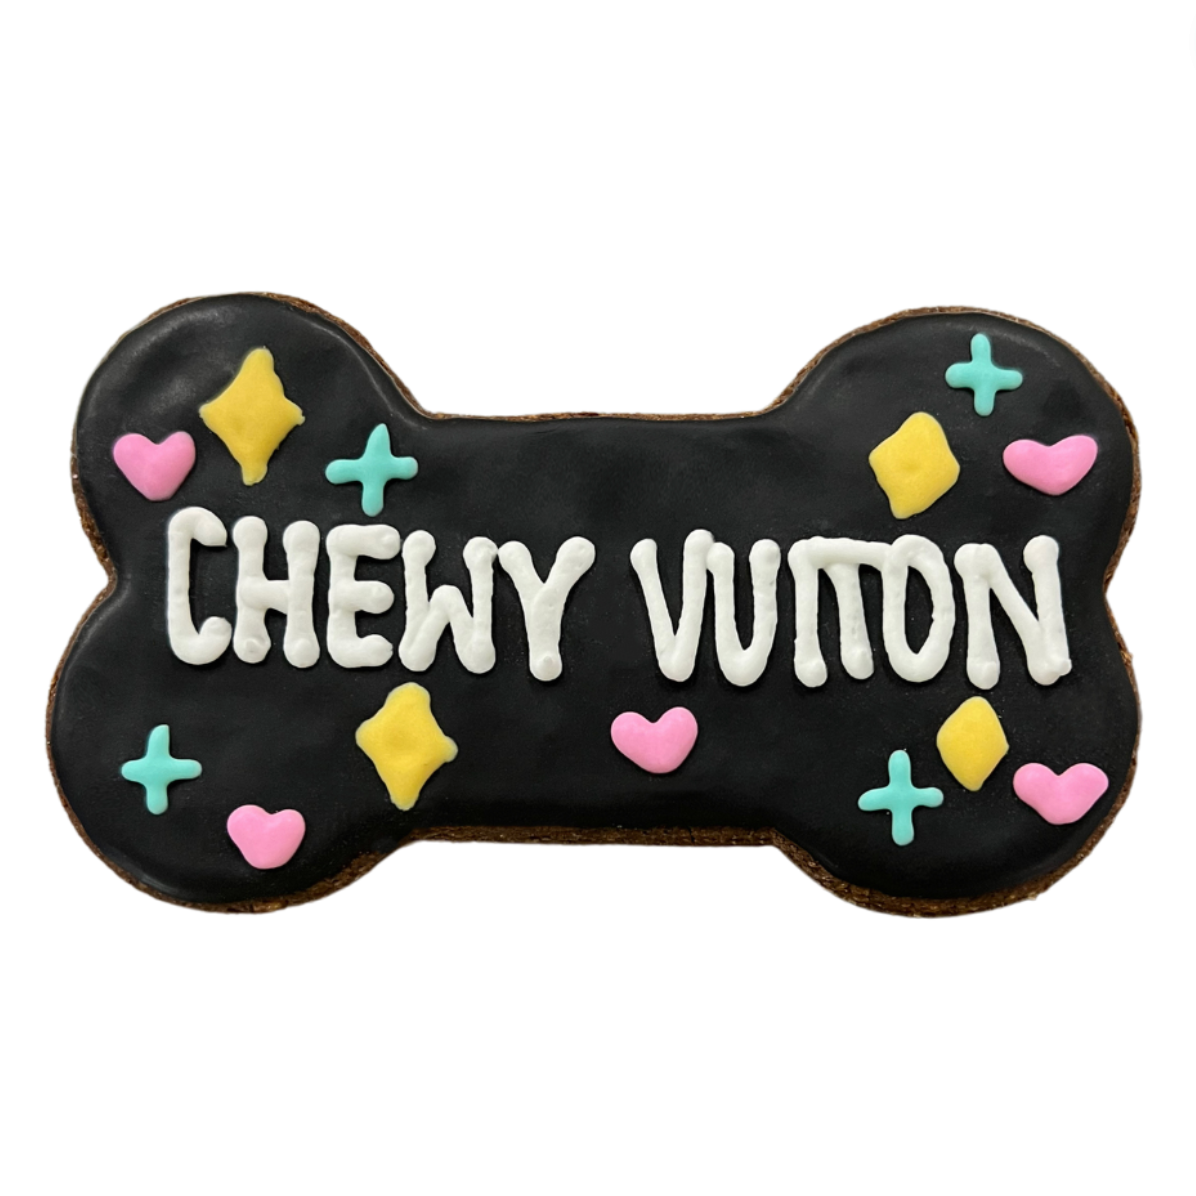 Chewy Vuiton Bone - Black Checker – Shop Southern Roots TX